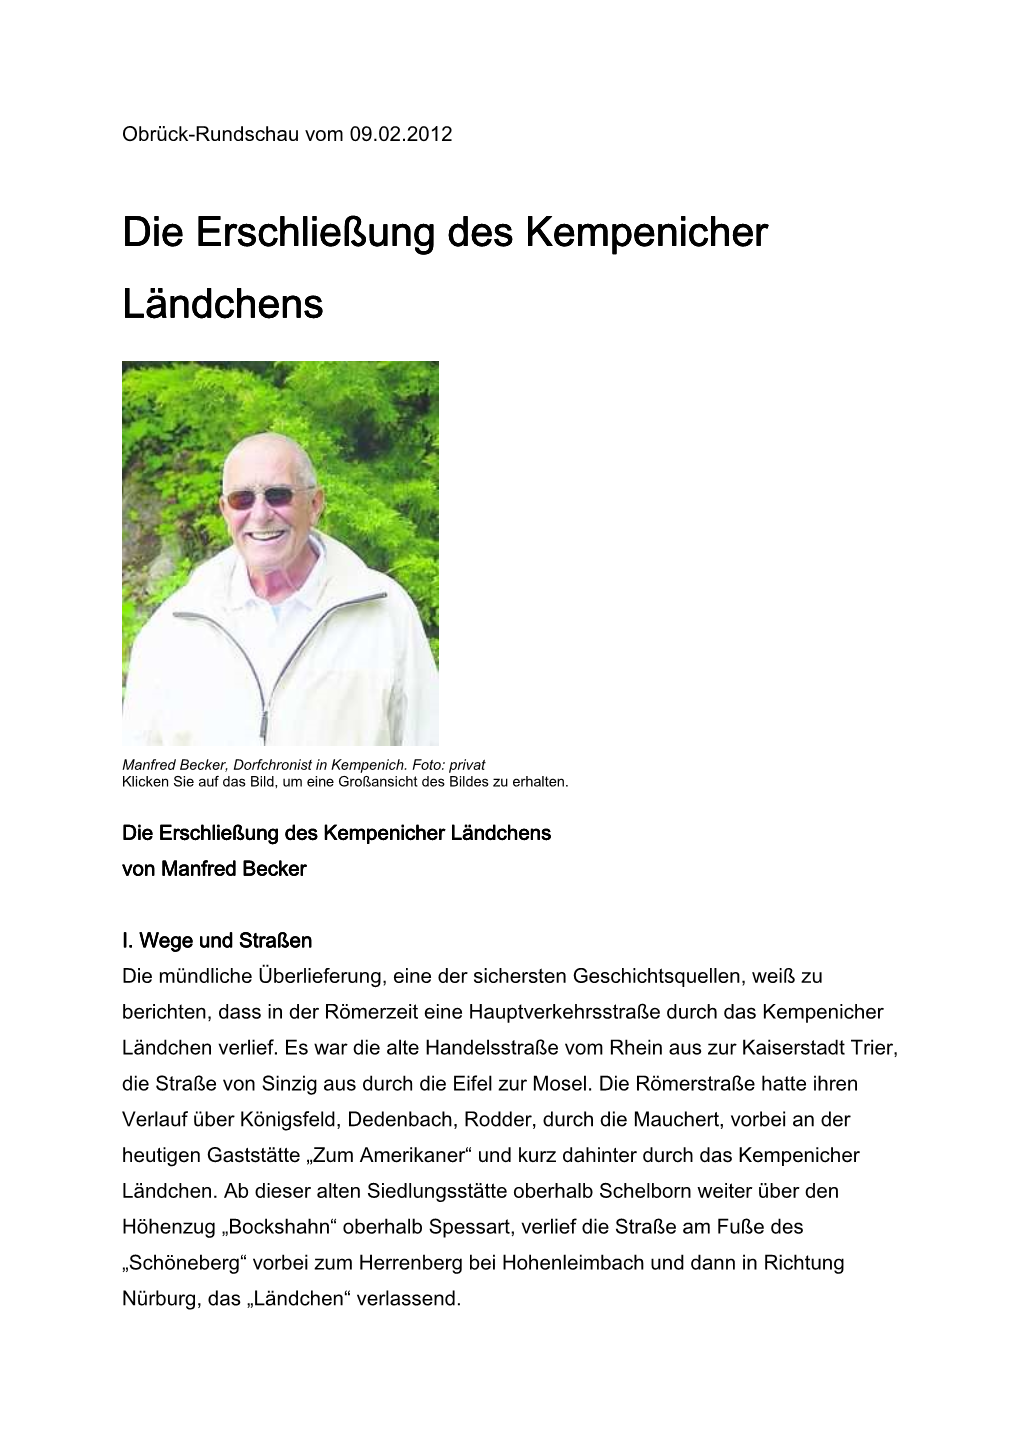 Manfred Becker 2012, Quelle: Olbrück-Rundschau